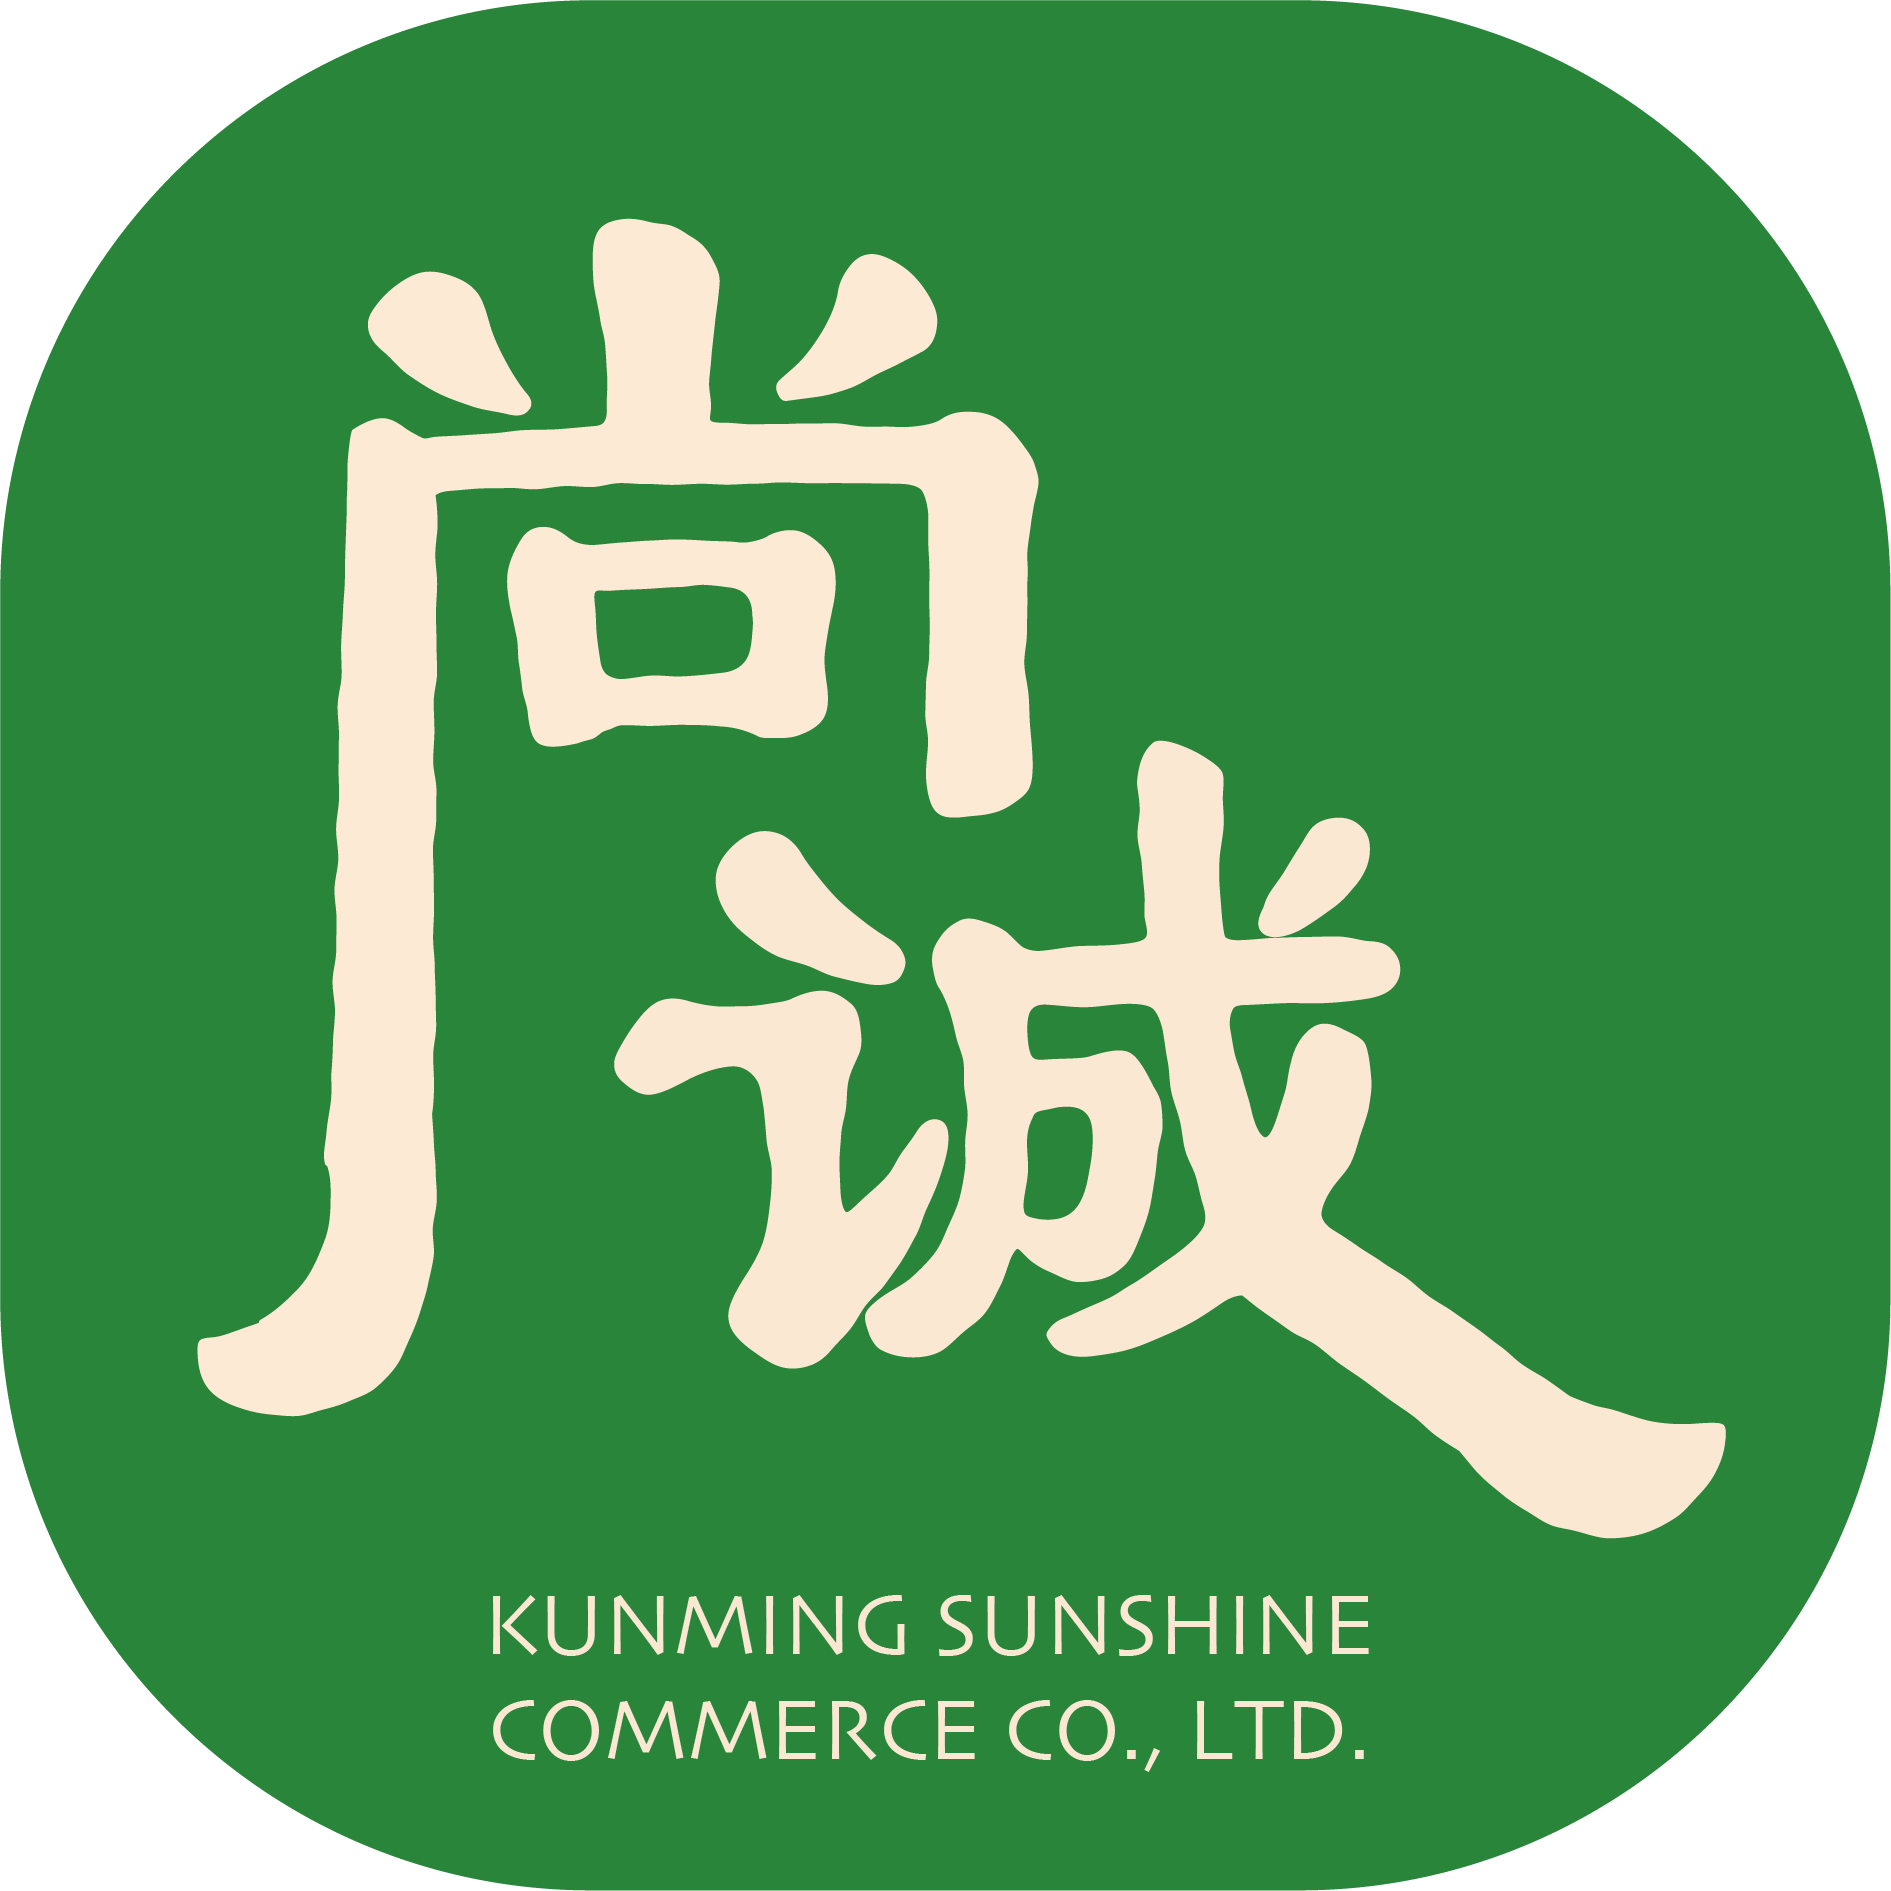 Kunming Sunshine Commerce Co., Ltd.